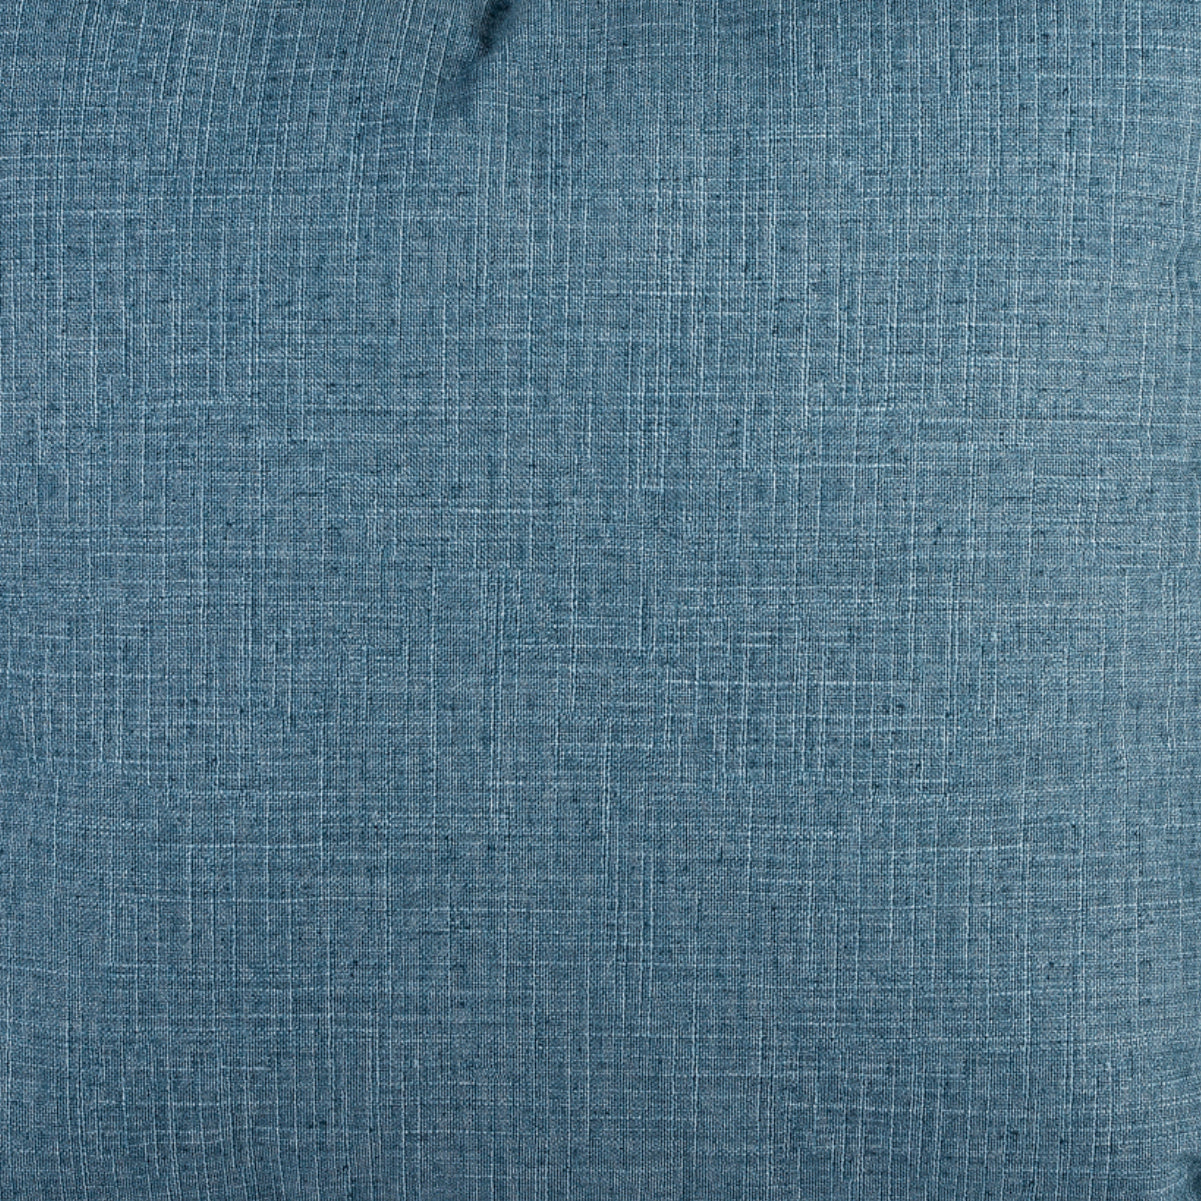 Cushion BELLUS 45x45 Blue Velvet Anti-stain